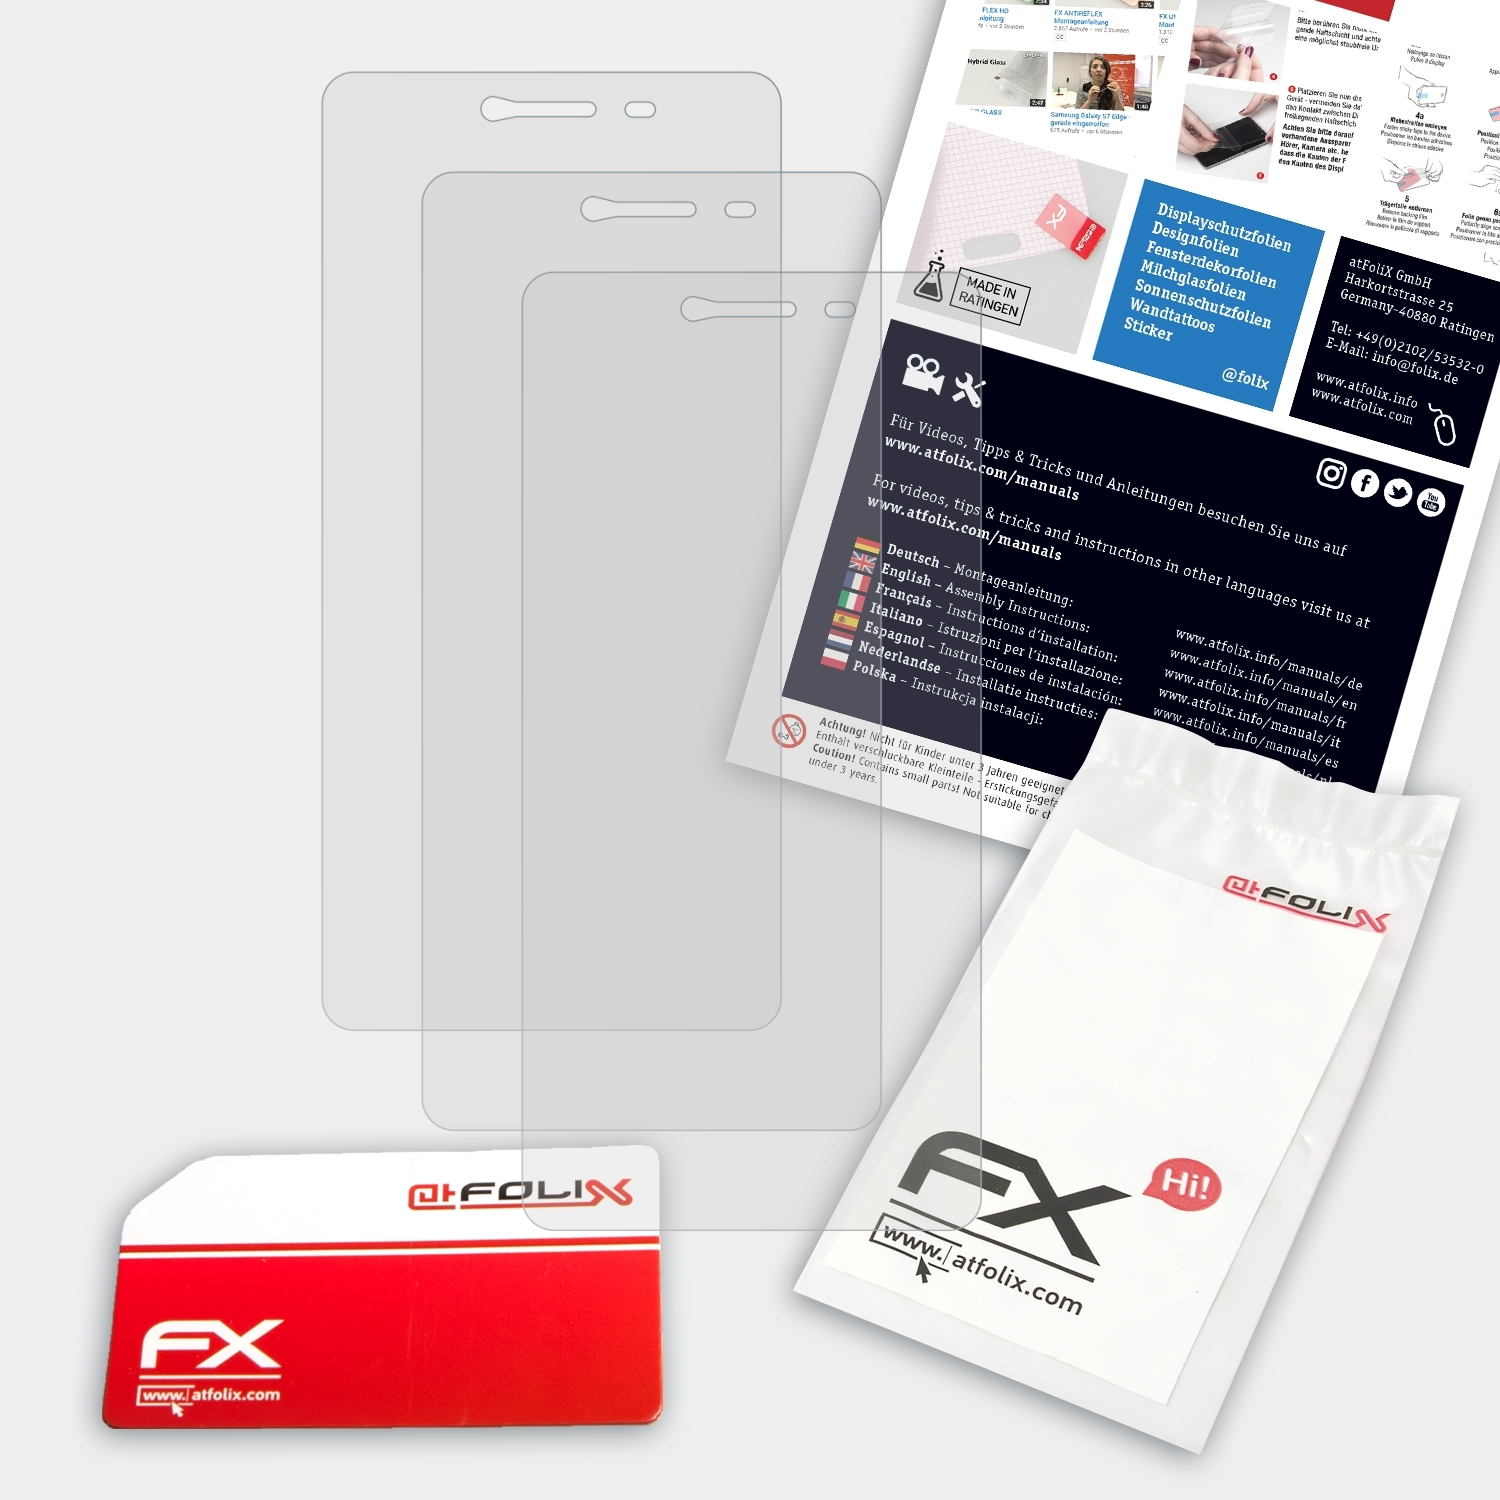 ATFOLIX 3x FX-Antireflex Displayschutz(für GoClever 550) Quantum 4